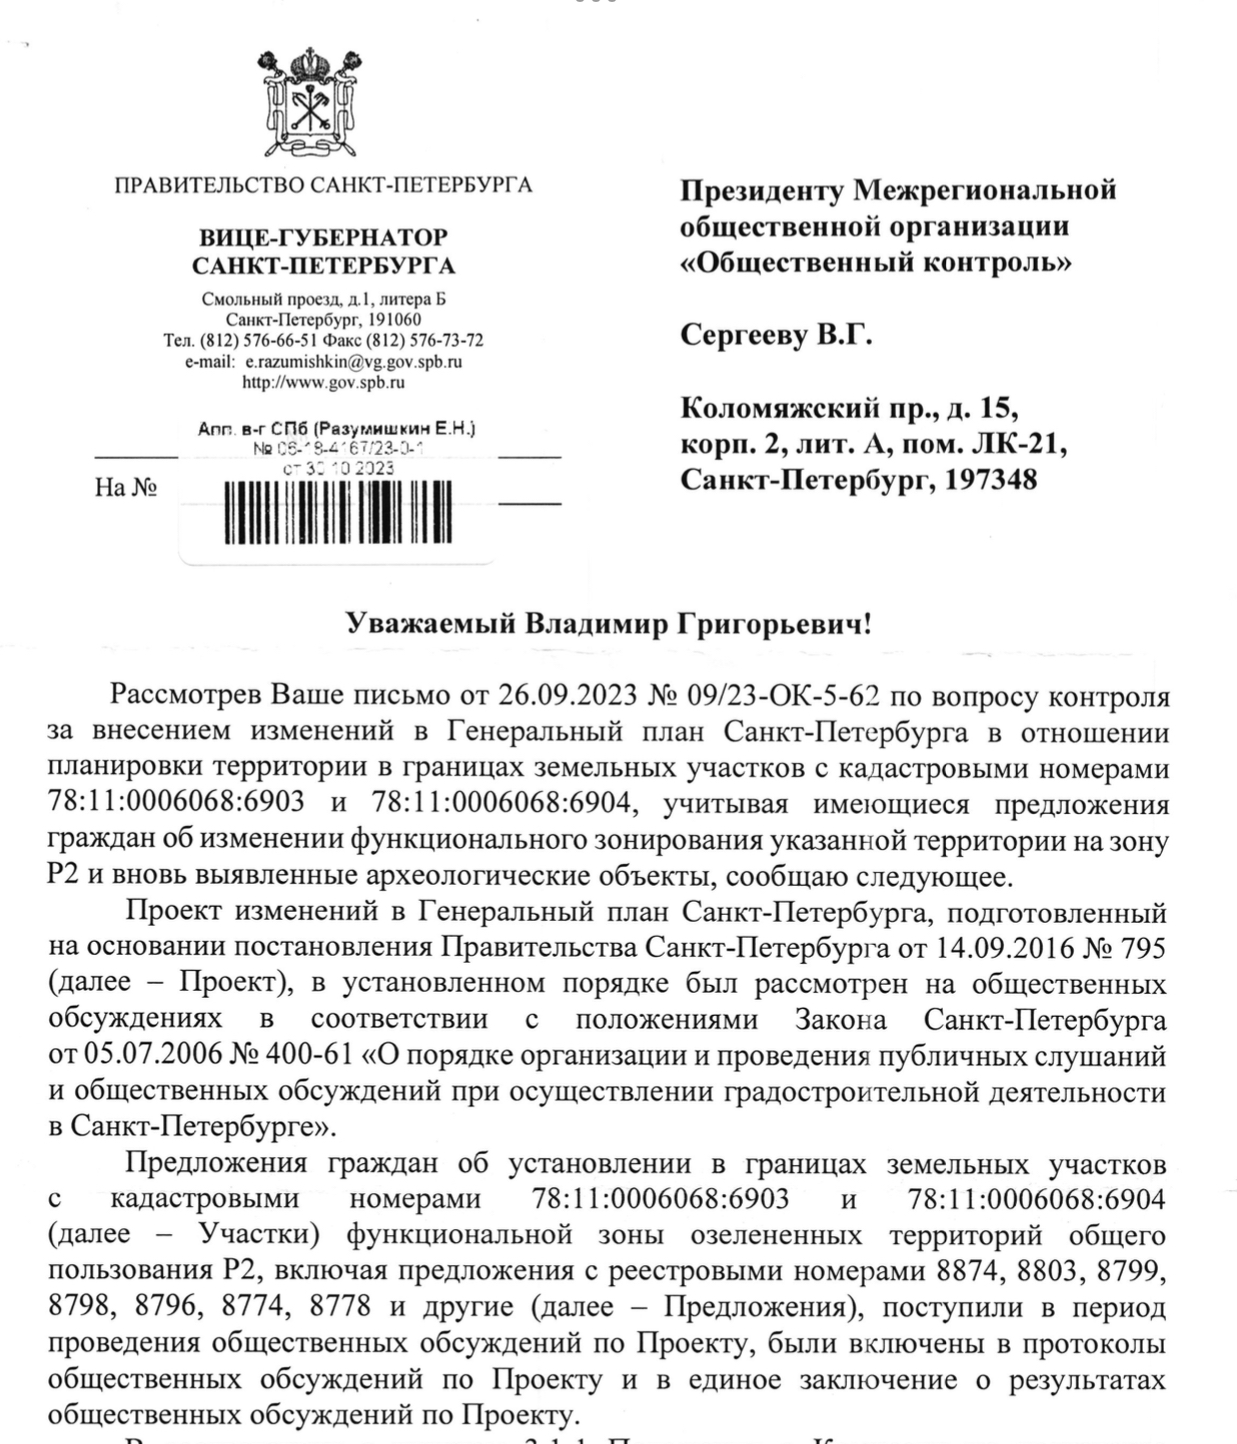 Ответ вице-губернатора Санкт-Петербурга Разумишкина Е.Н. на письмо от 26.09.2023 Ns 09/23-OK-5-62 по вопросу контроля за внесением изменений в Генеральный план Санкт-Петербурга.